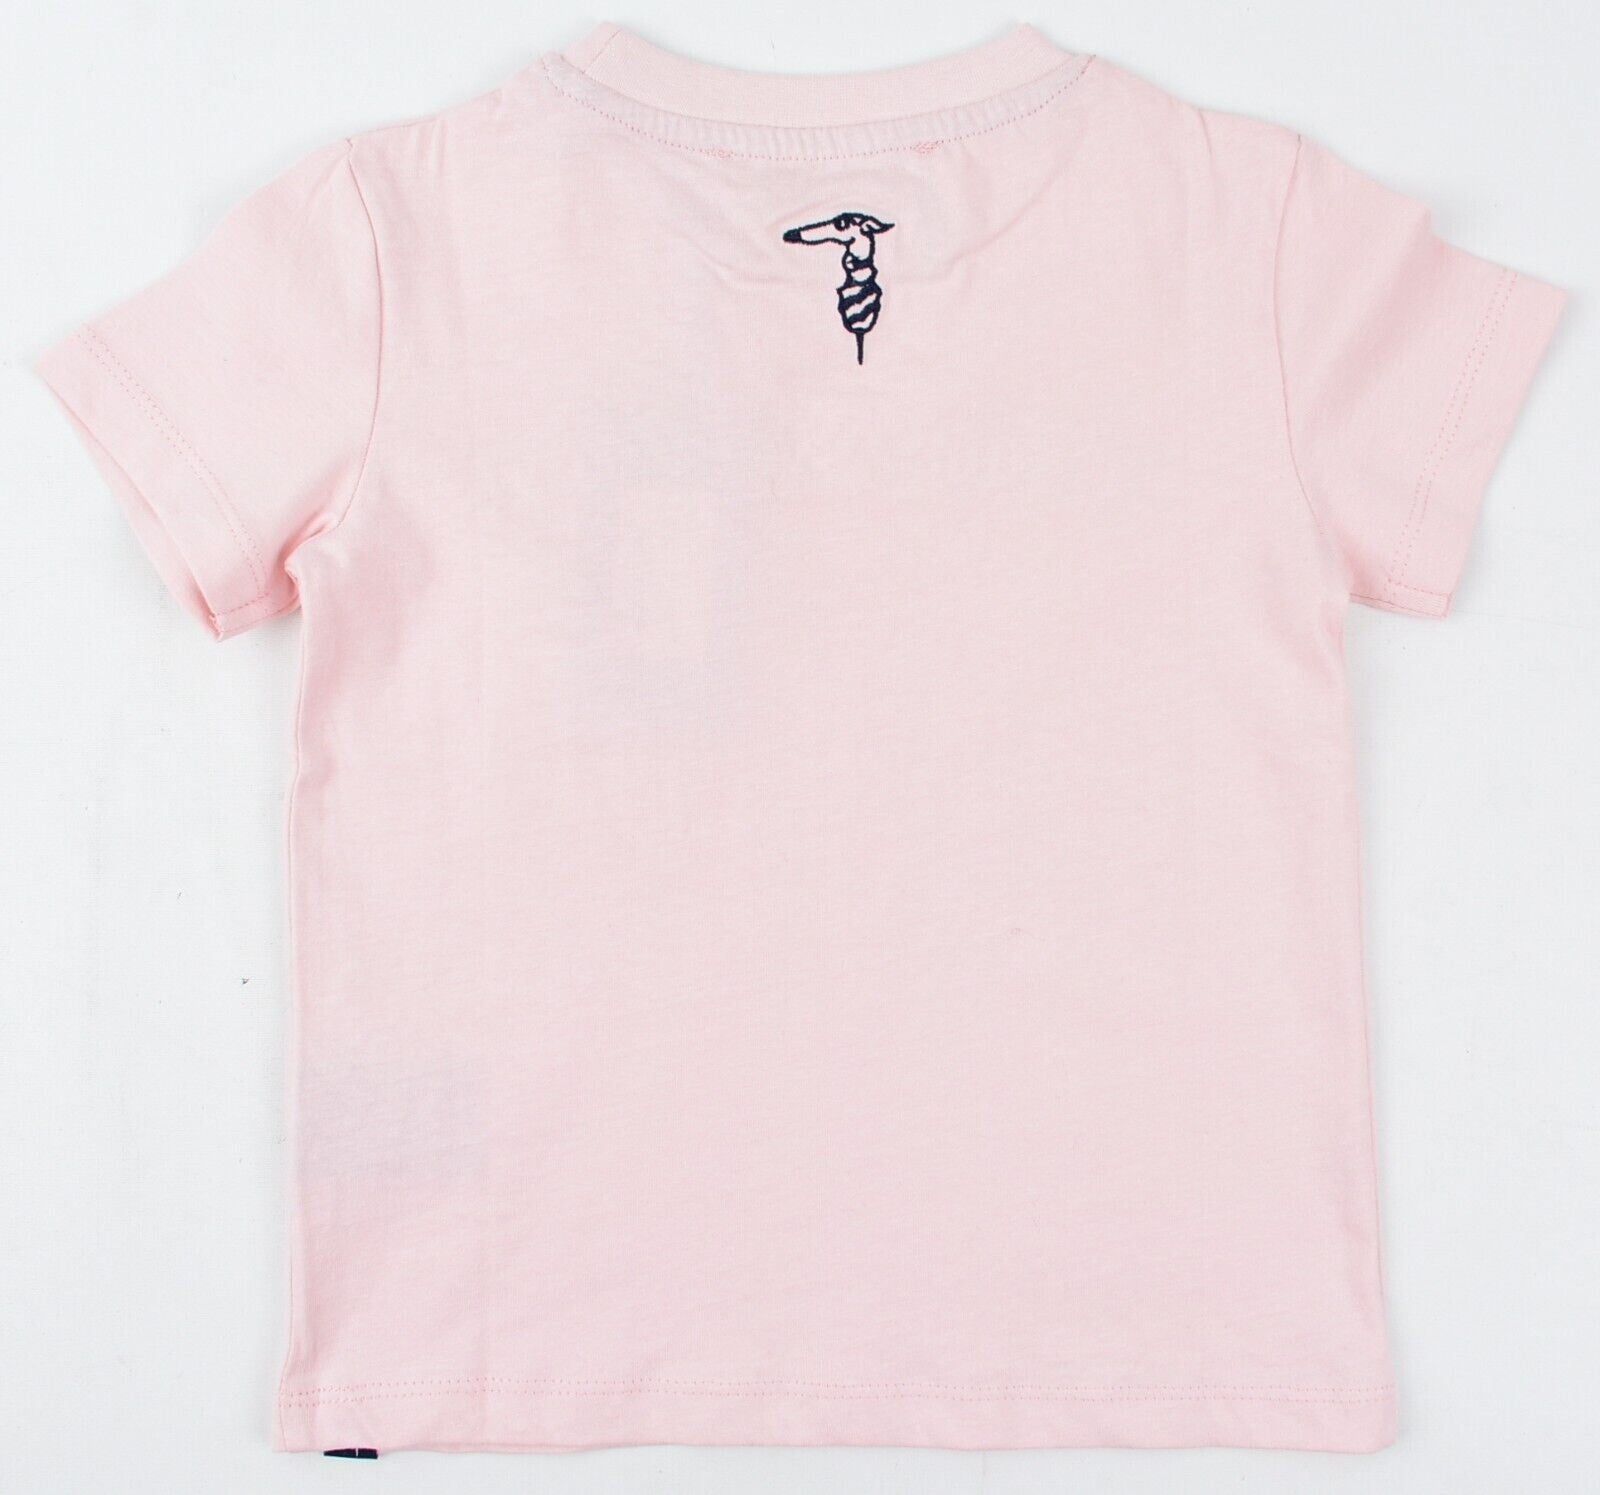 TRUSSARDI Baby Girls ADDIS Embellished Logo T-shirt, Powder Pink, size 3 years